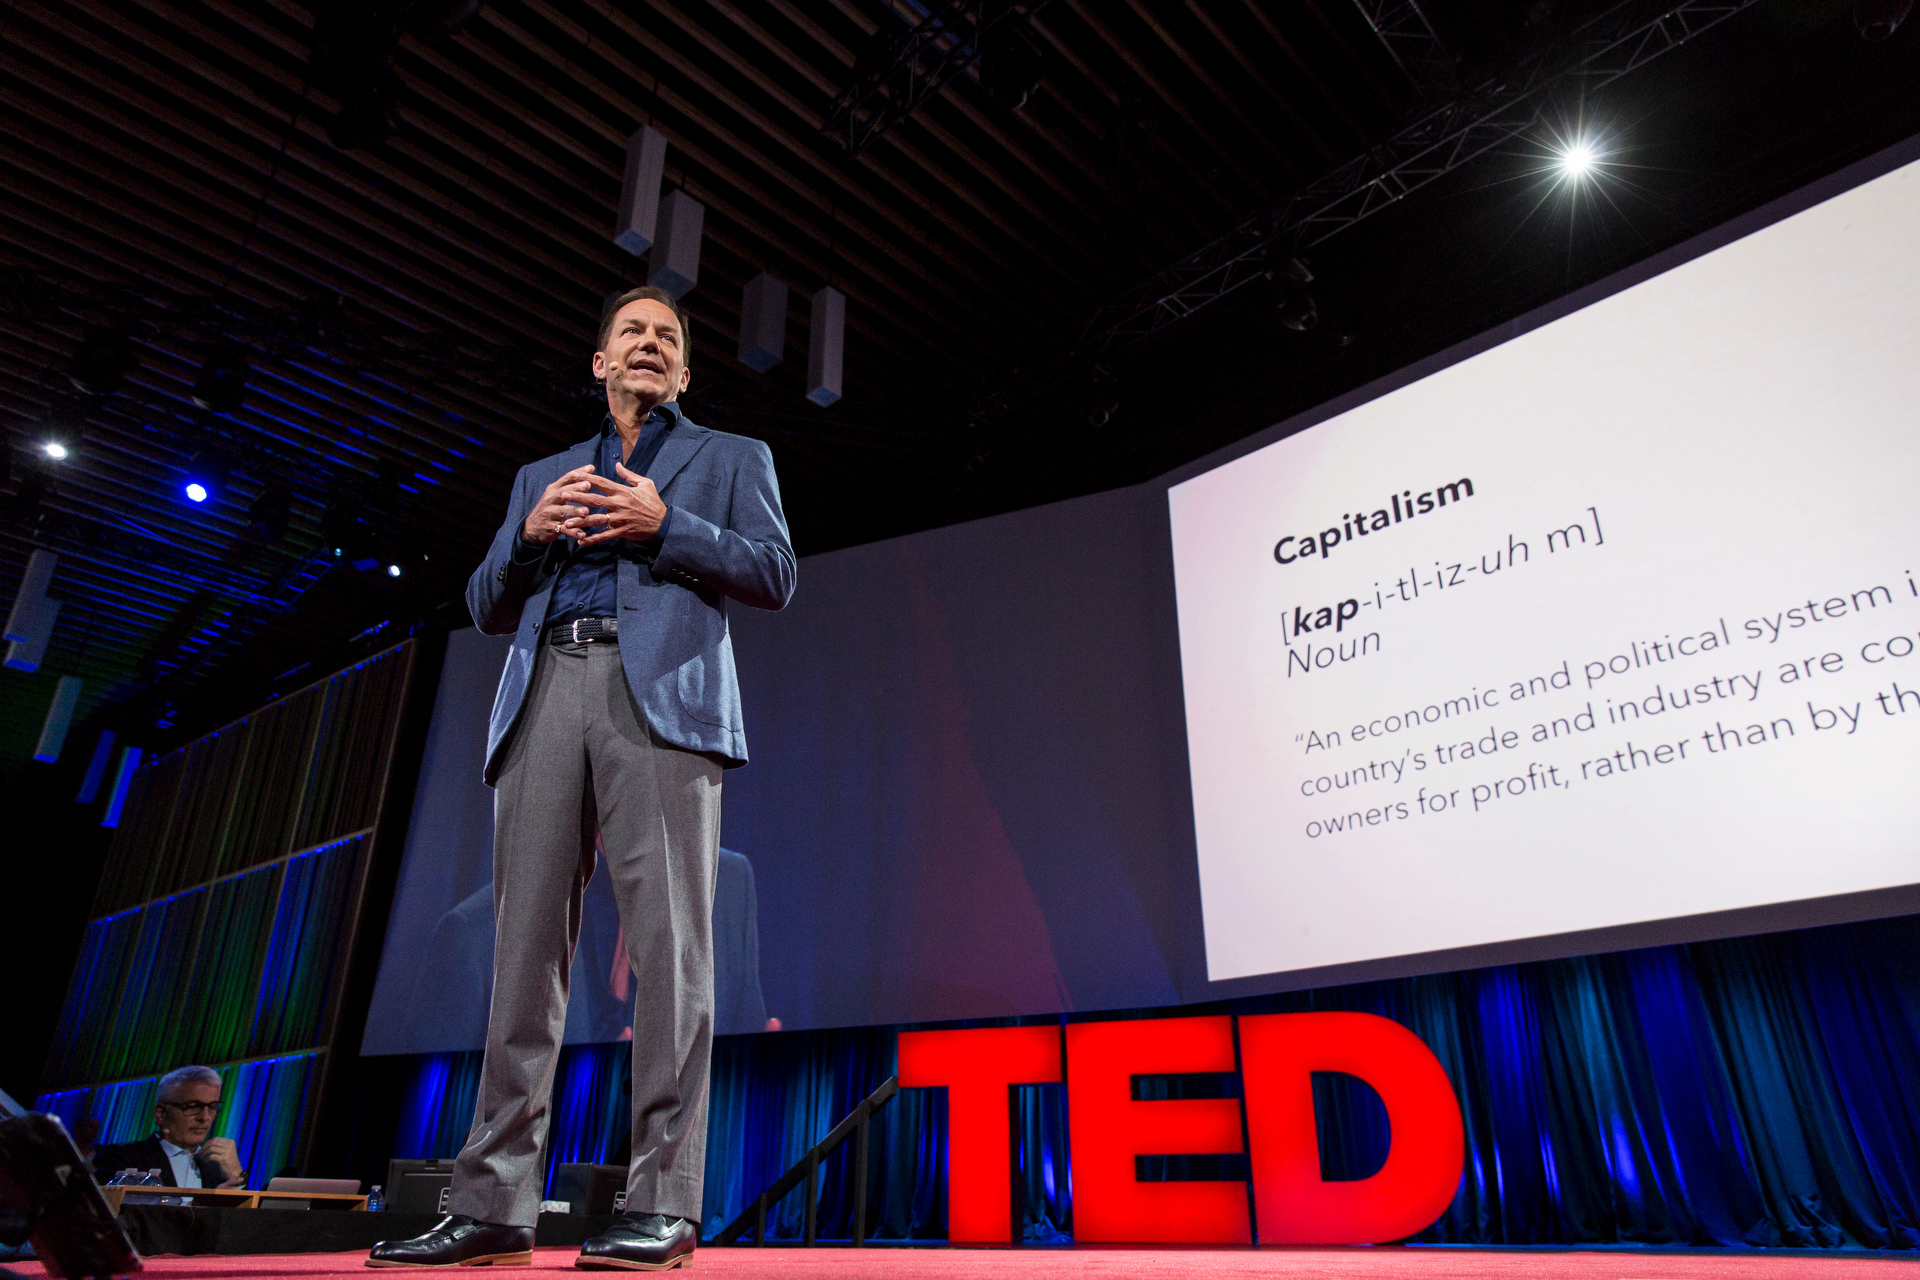 Justice, capitalism and progress: Paul Tudor Jones II at TED2015